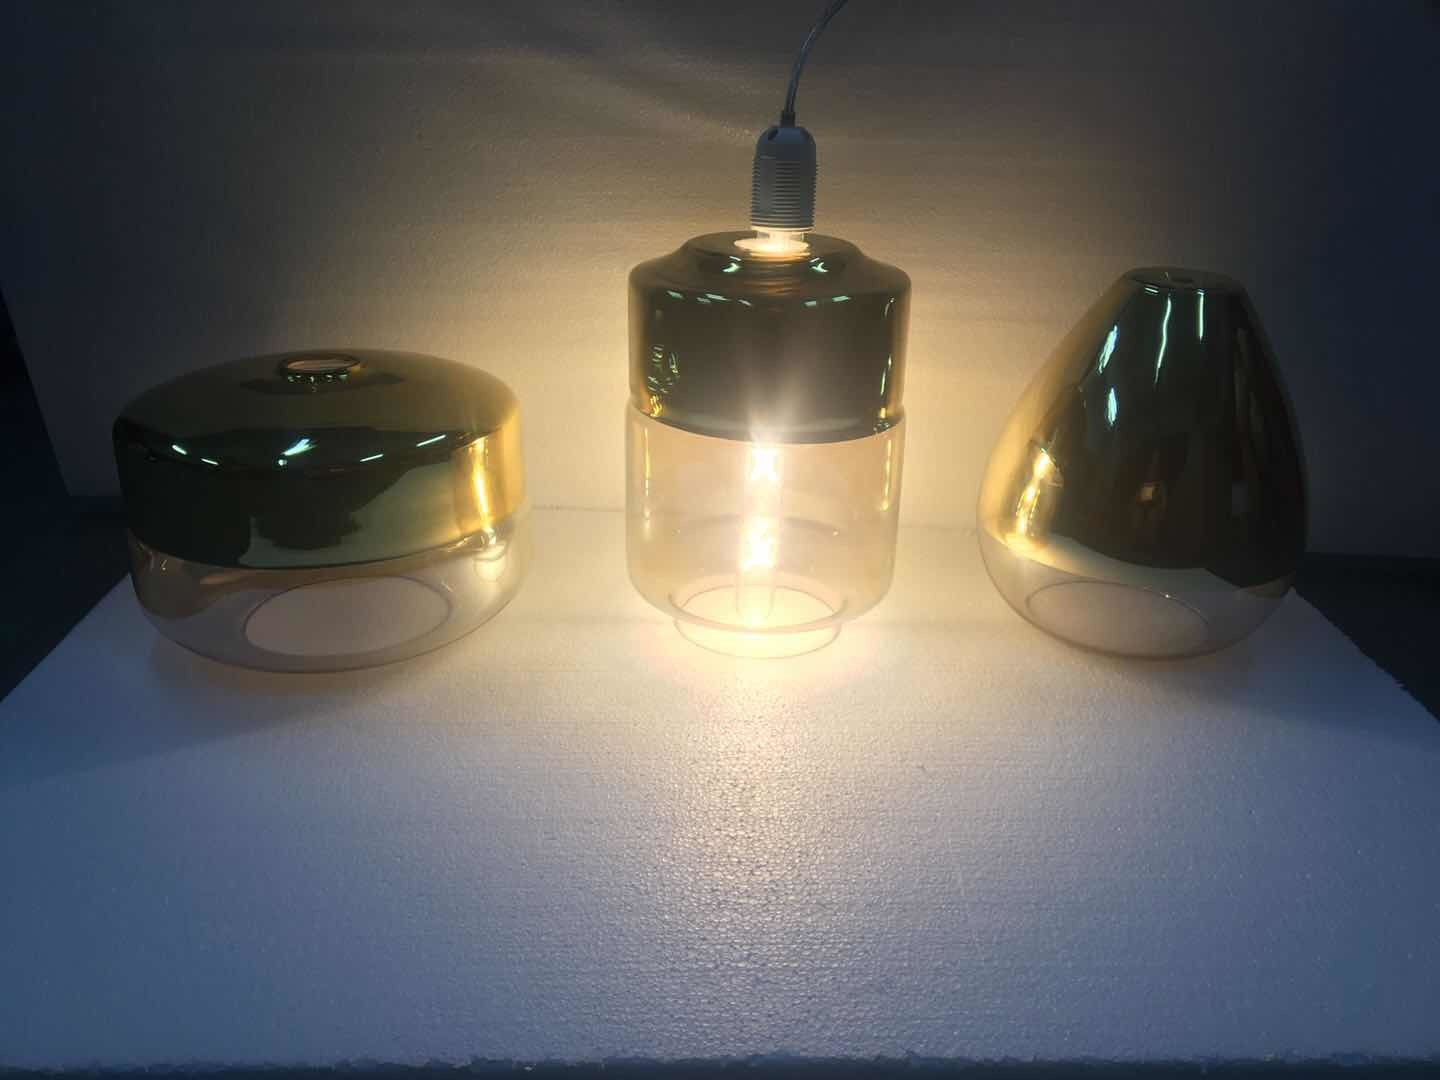 غرفة الطعام قلادة المصباح الزجاجي الذهبي المتدلي (P0032)